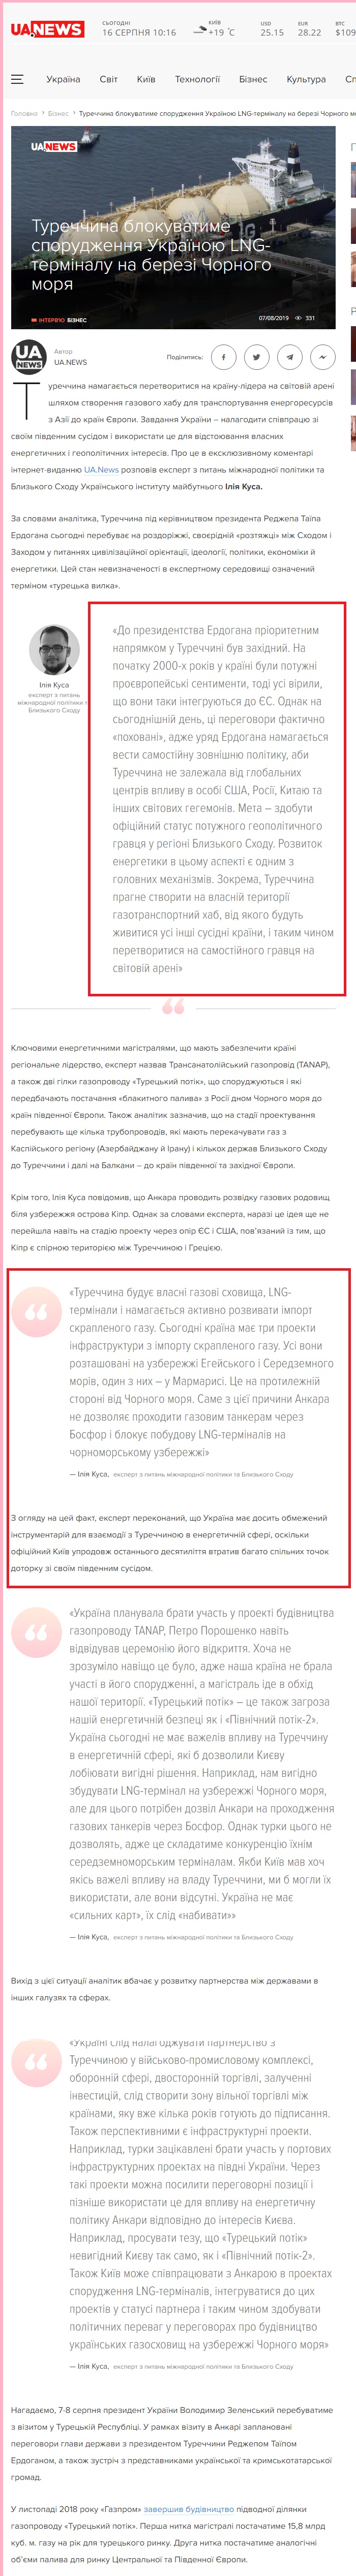 https://ua.news/ua/turtsyya-budet-blokyrovat-sooruzhenye-ukraynoj-lng-termynala-na-beregu-chyornogo-morya/